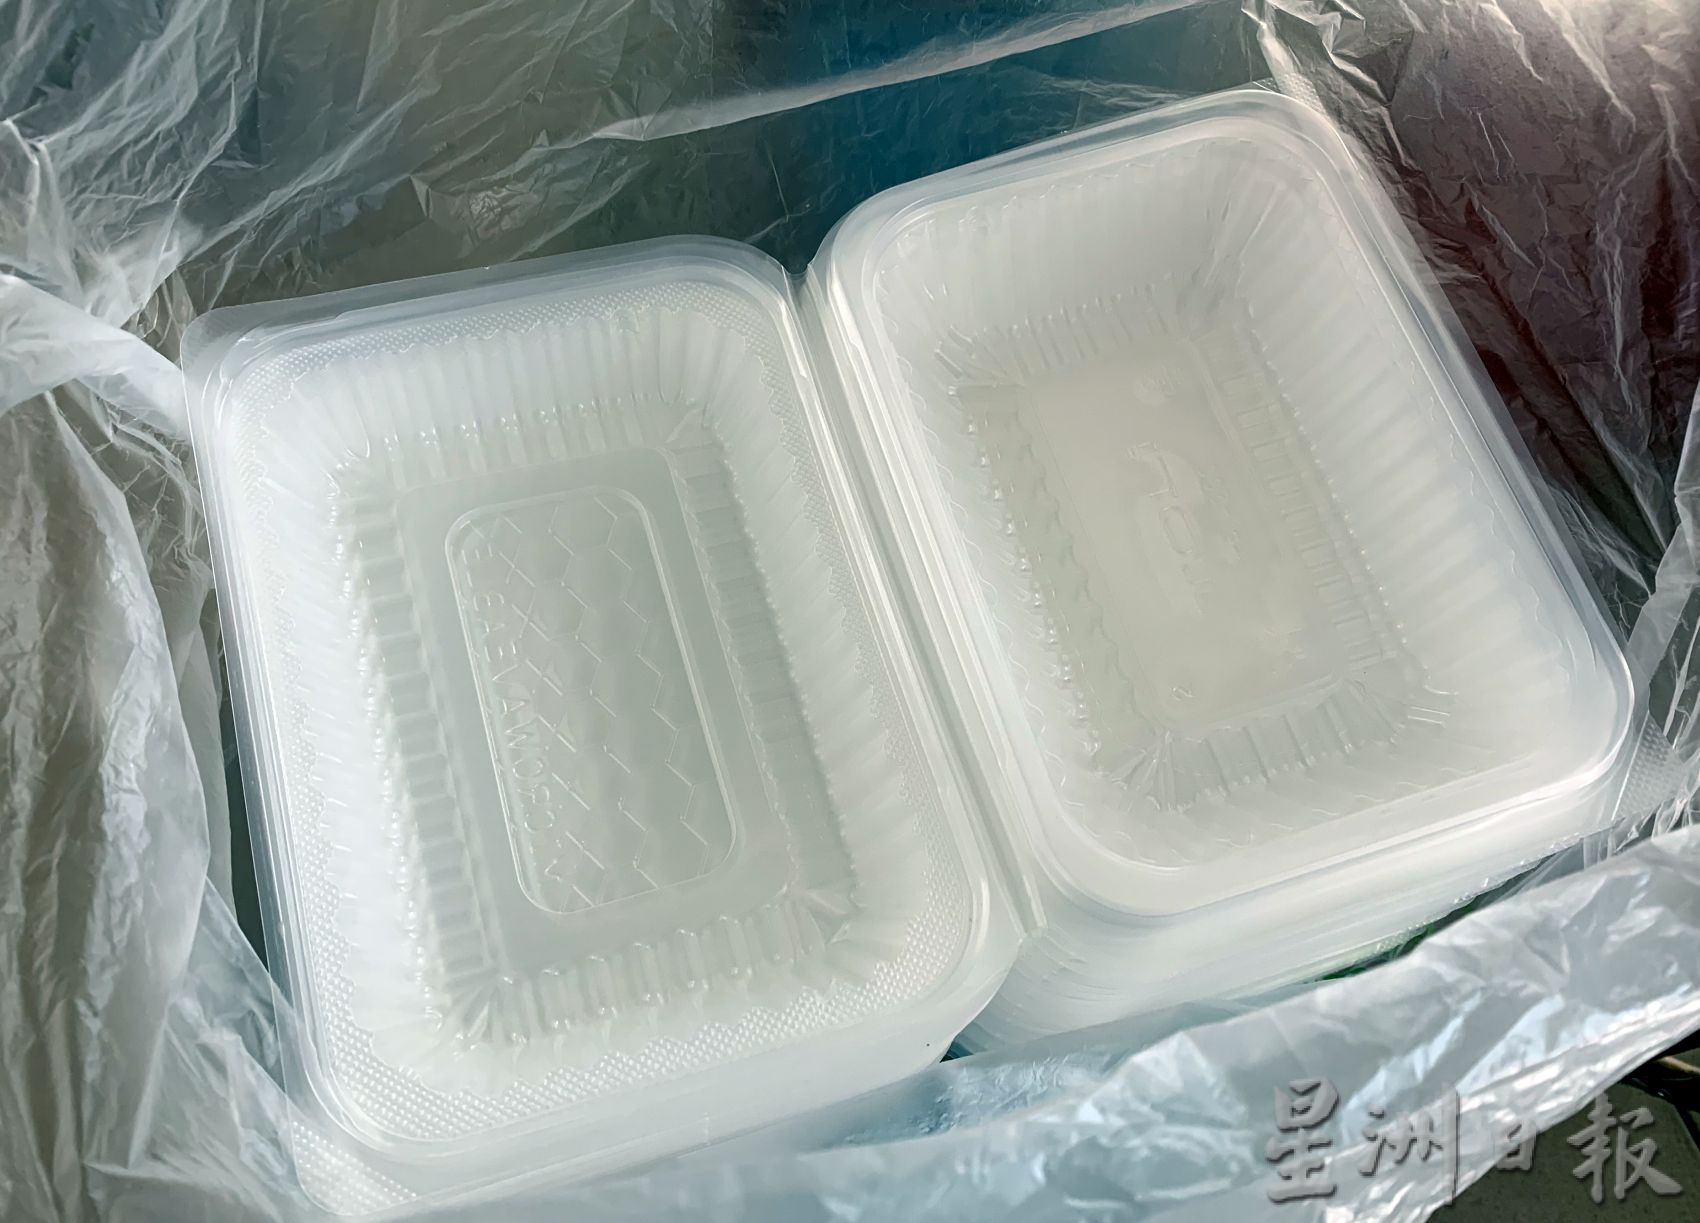 （古城封面主文）塑料饭盒起价货源吃紧·业者面对挑战